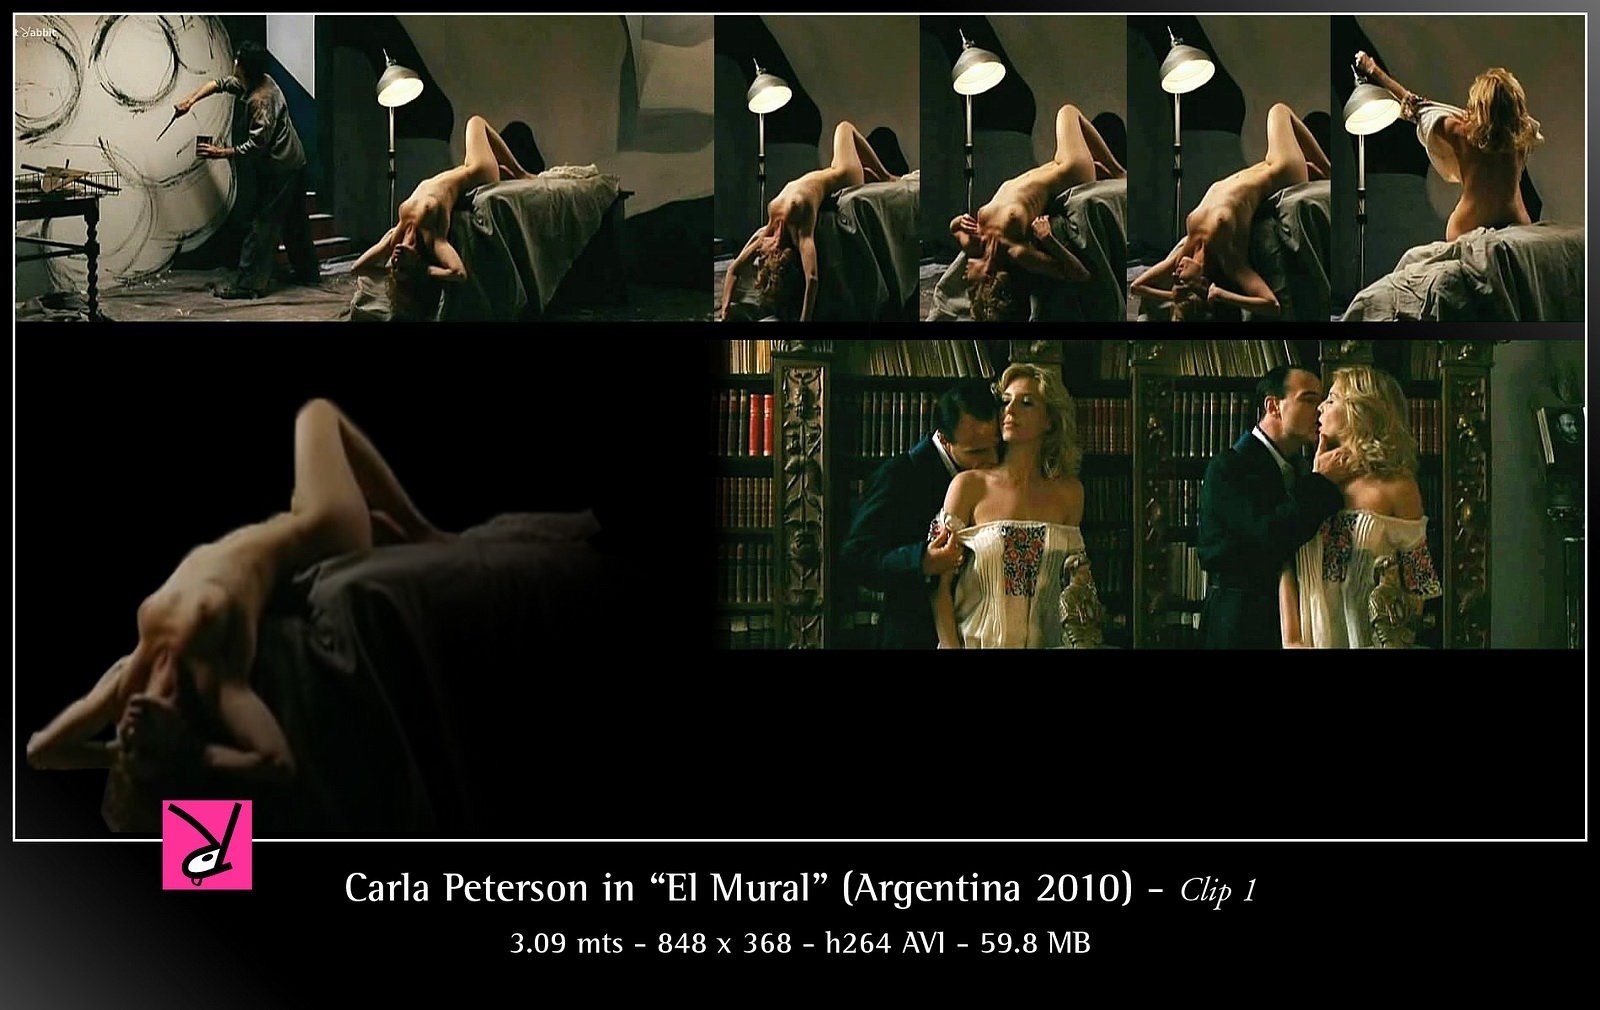 Carla Peterson nude pics.